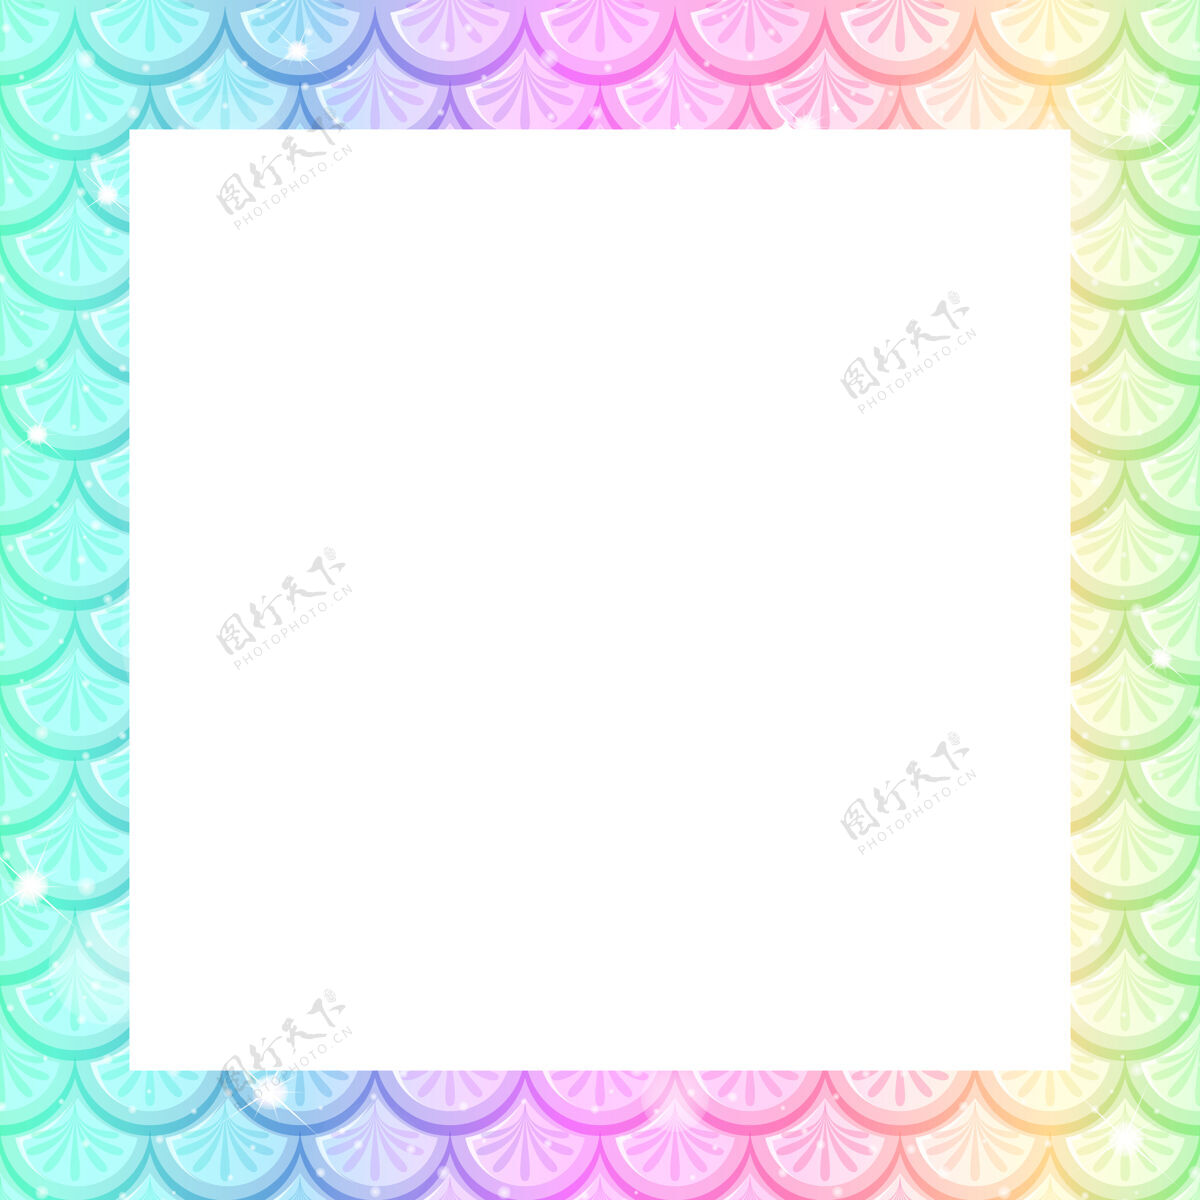 生物空白粉彩彩虹鱼鳞框架模板梦标志魔术